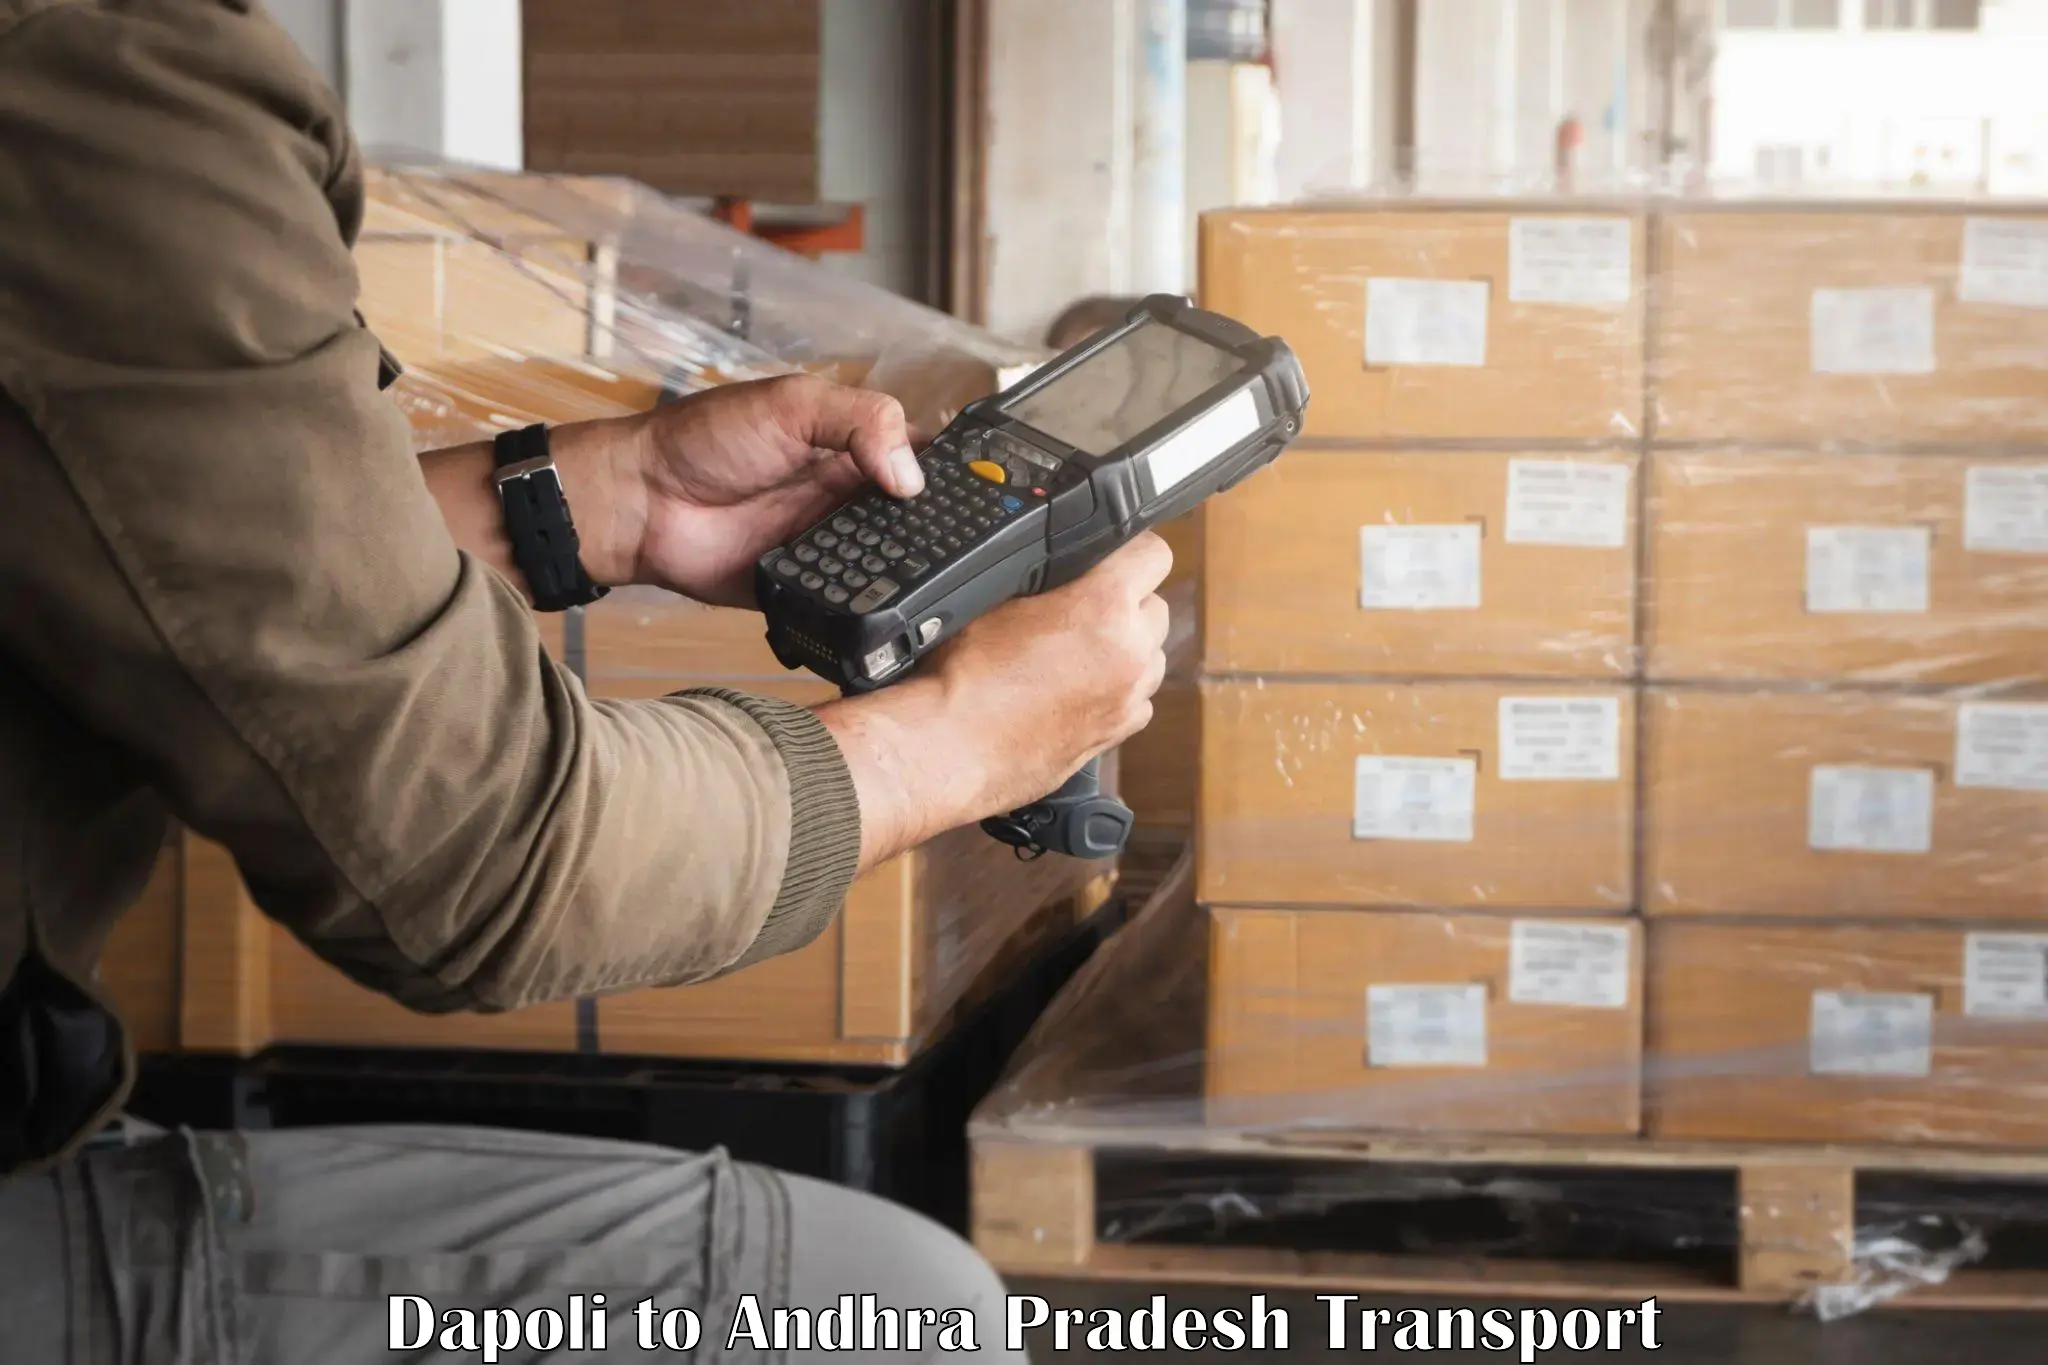 Lorry transport service Dapoli to Andhra Pradesh